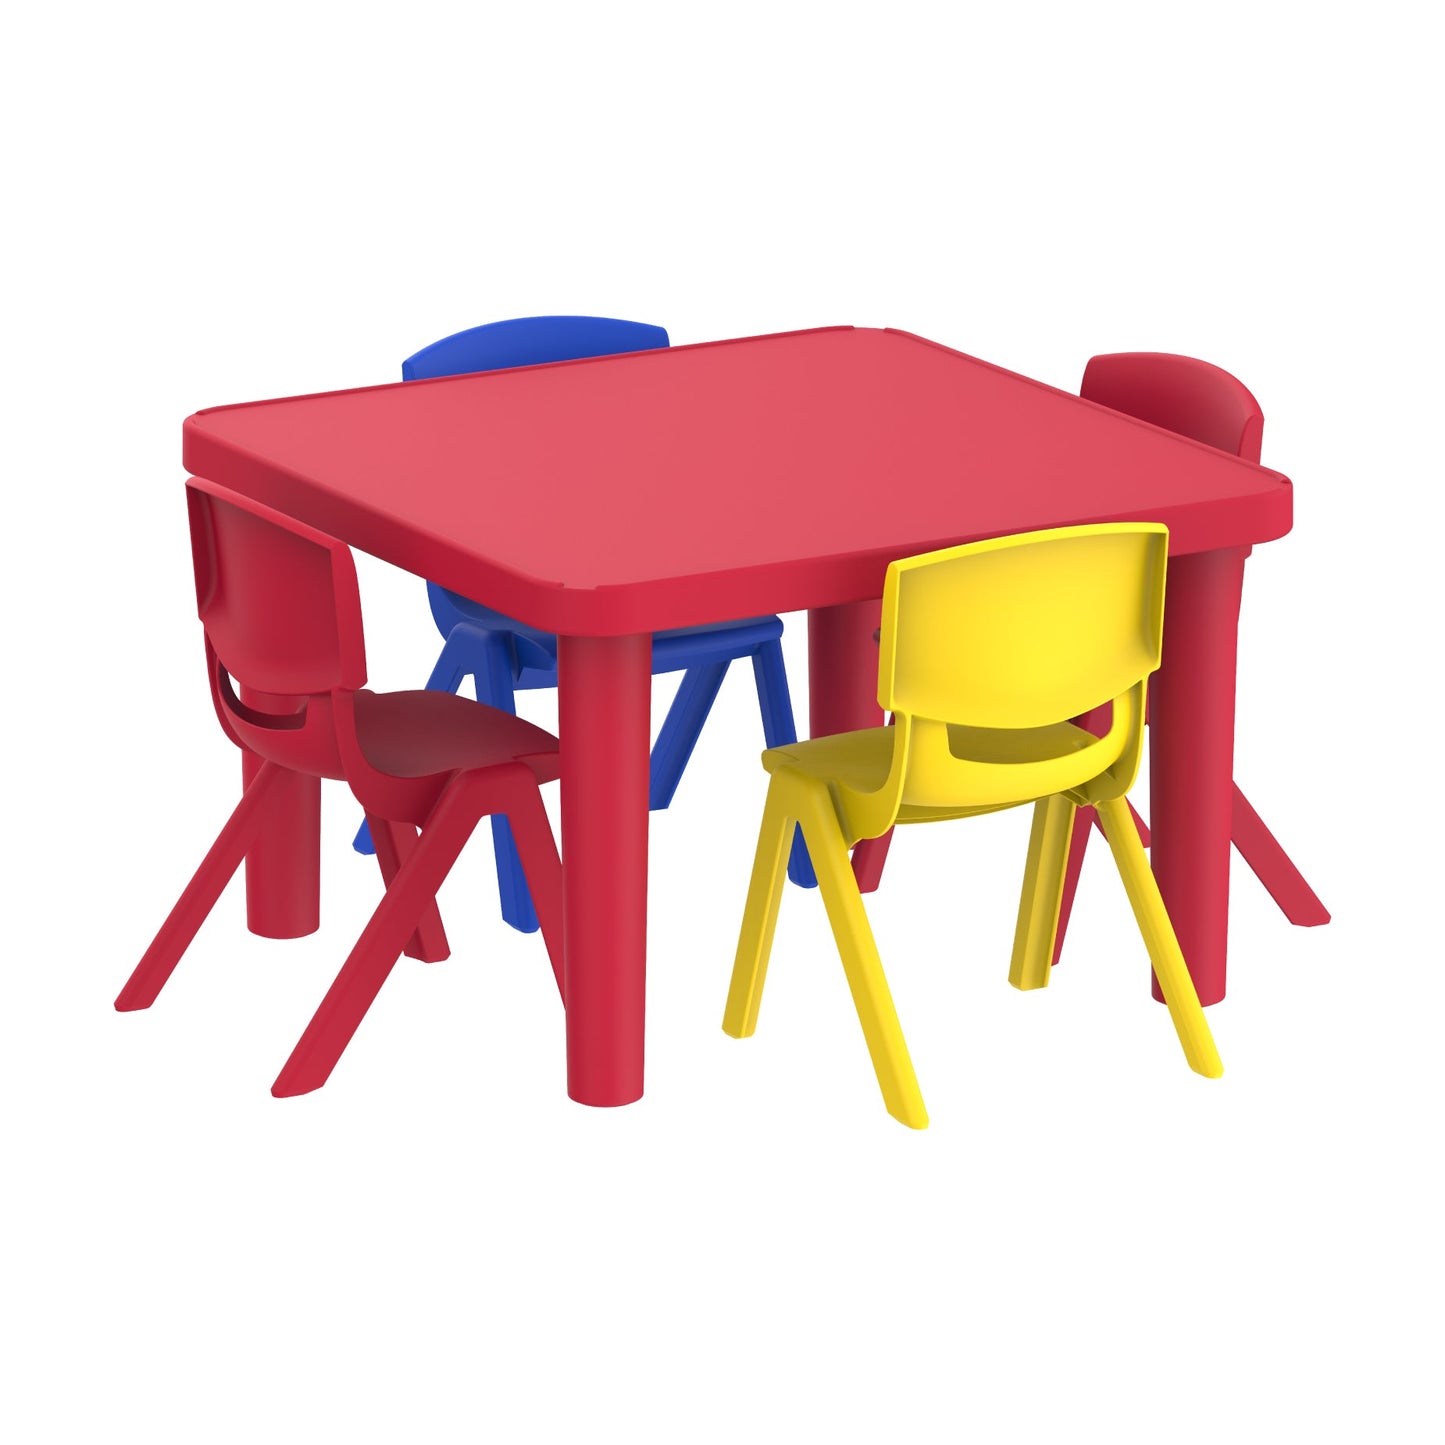 ساحة طاولة رياض الأطفال + 4 كراسي جونيور ديلوكس